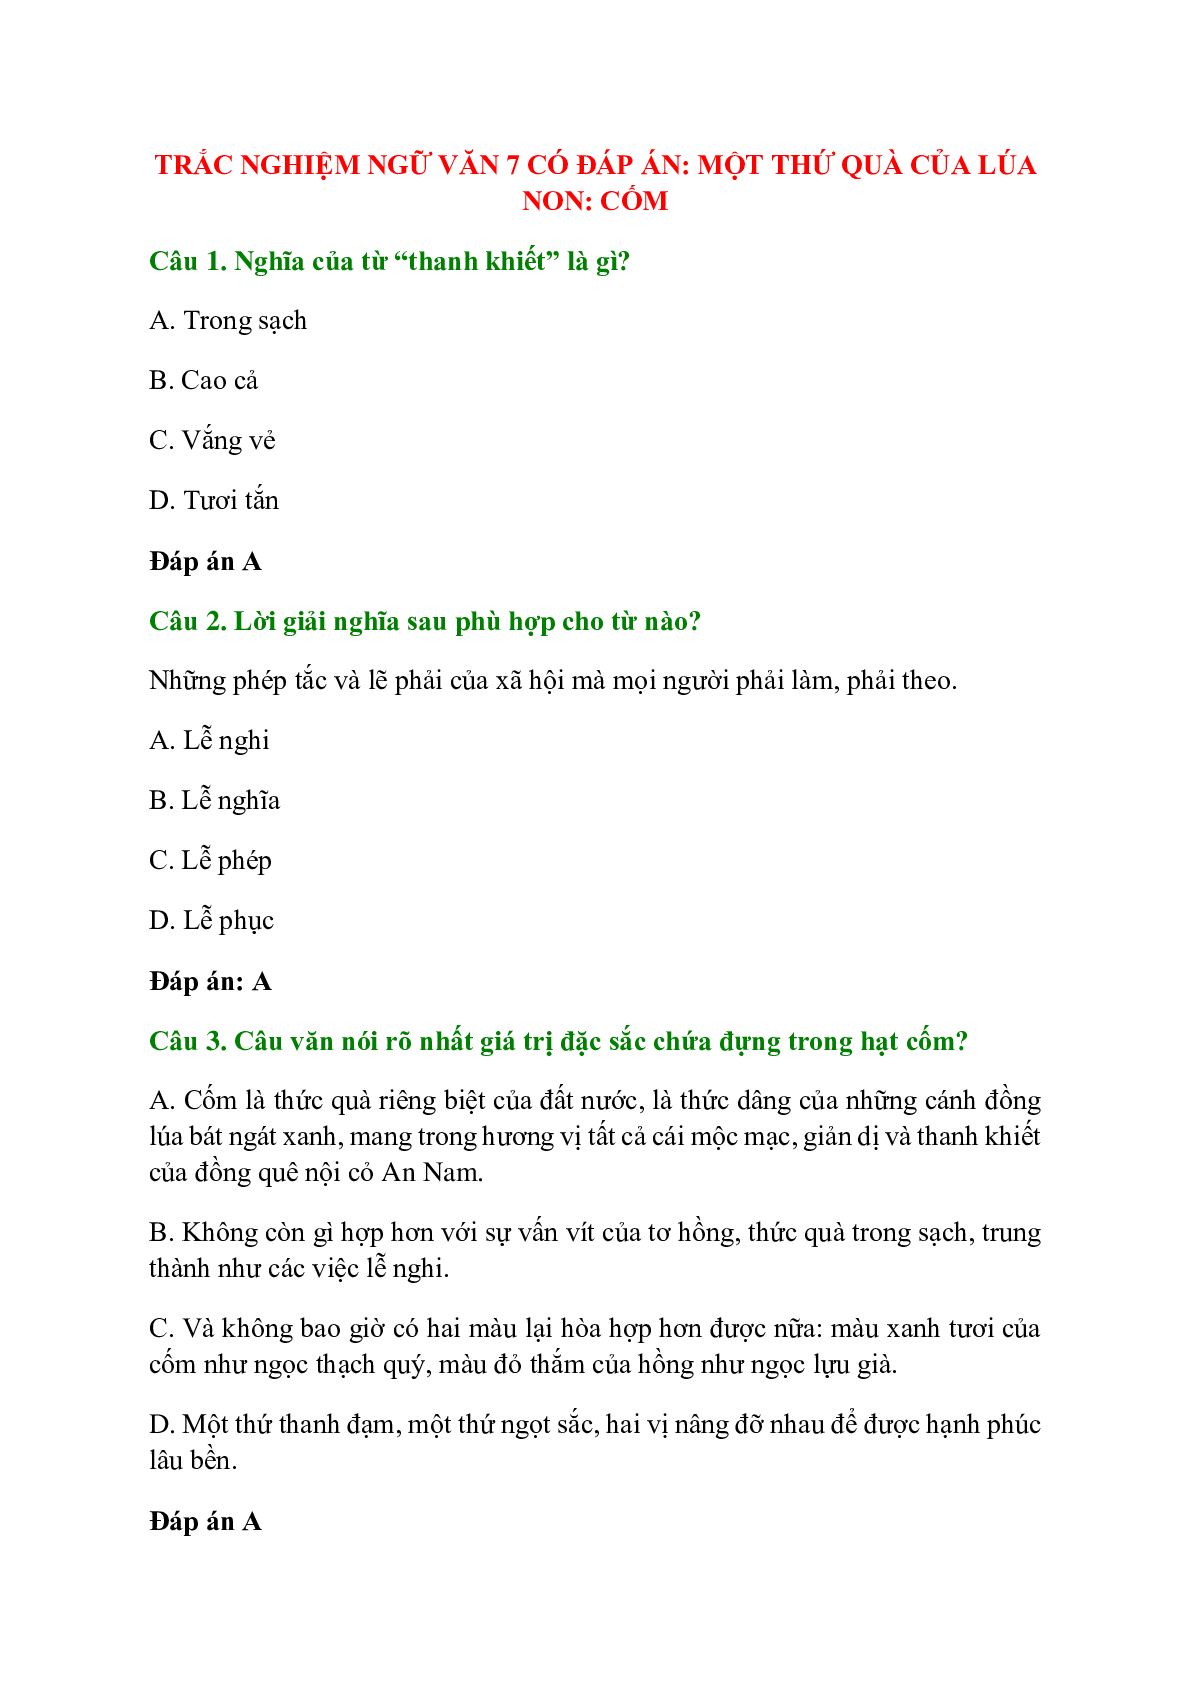 Trắc nghiệm Một thứ quà của lúa non: Cốm có đáp án – Ngữ văn lớp 7 (trang 1)